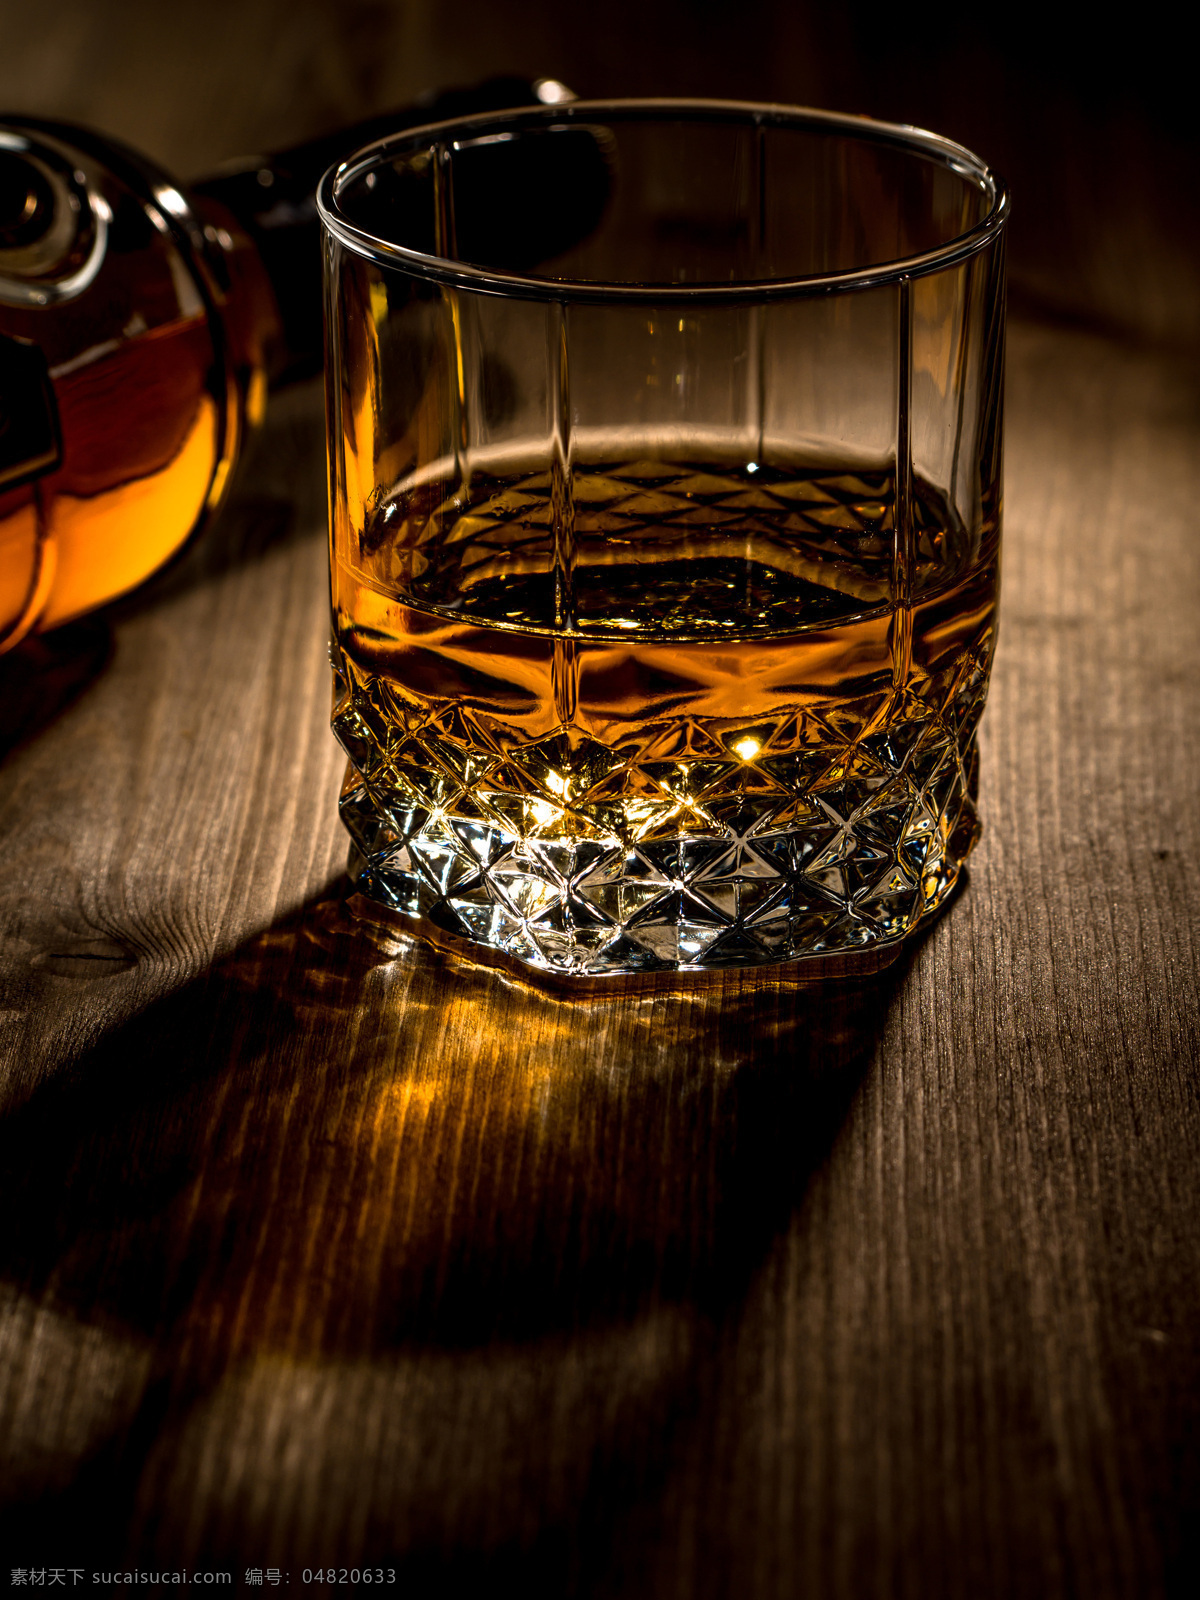 高档 威士忌 洋酒 酒水 玻璃酒杯 玻璃杯子 酒类图片 餐饮美食